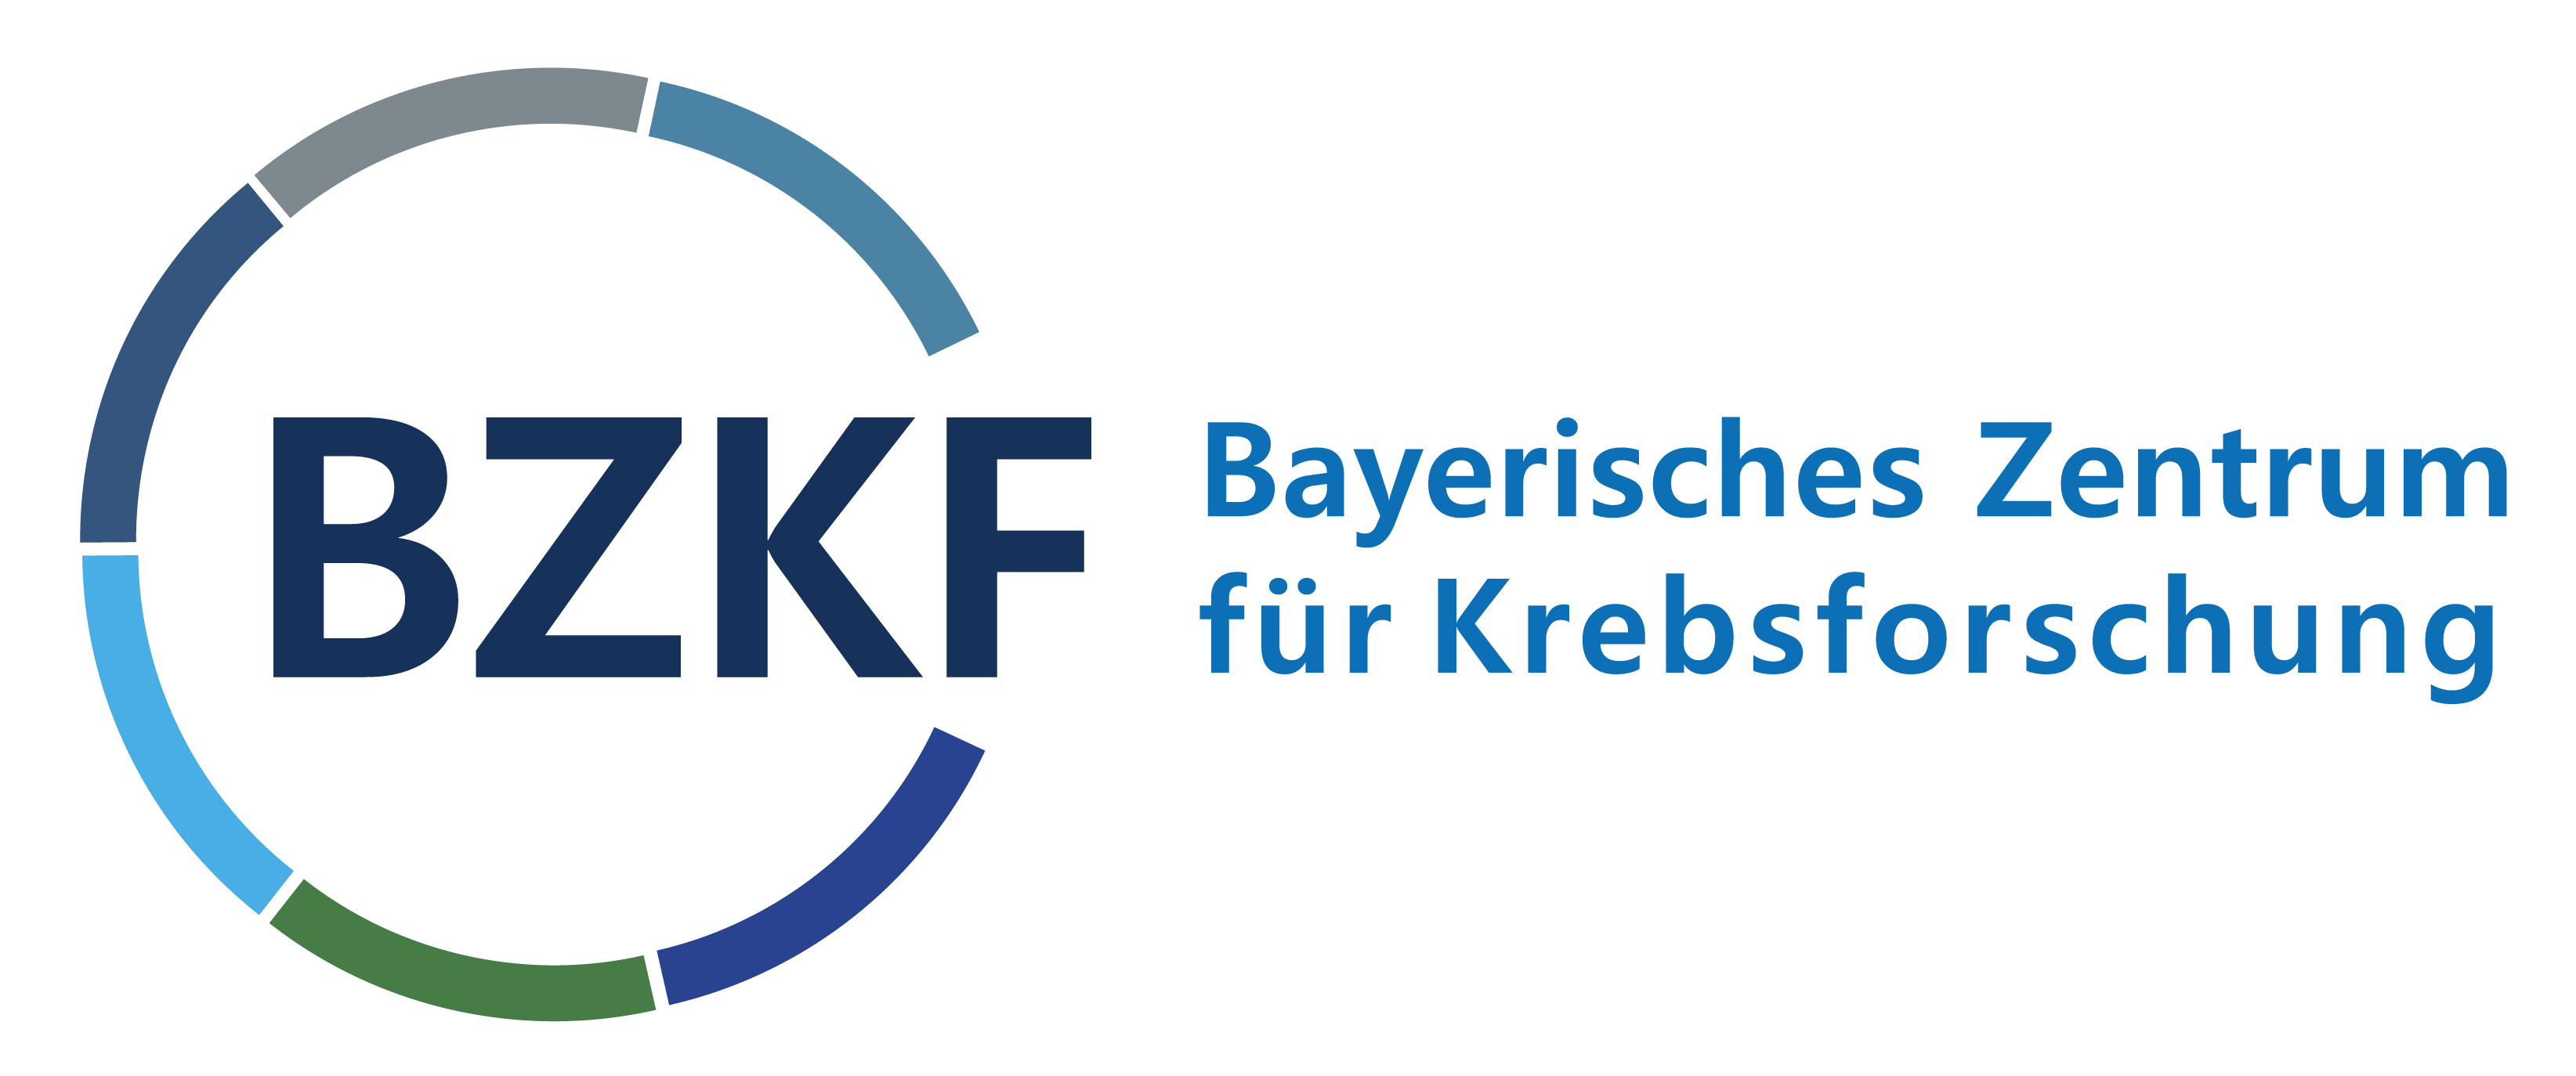 BZKF Bayerisches Zentrum für Krebsforschung